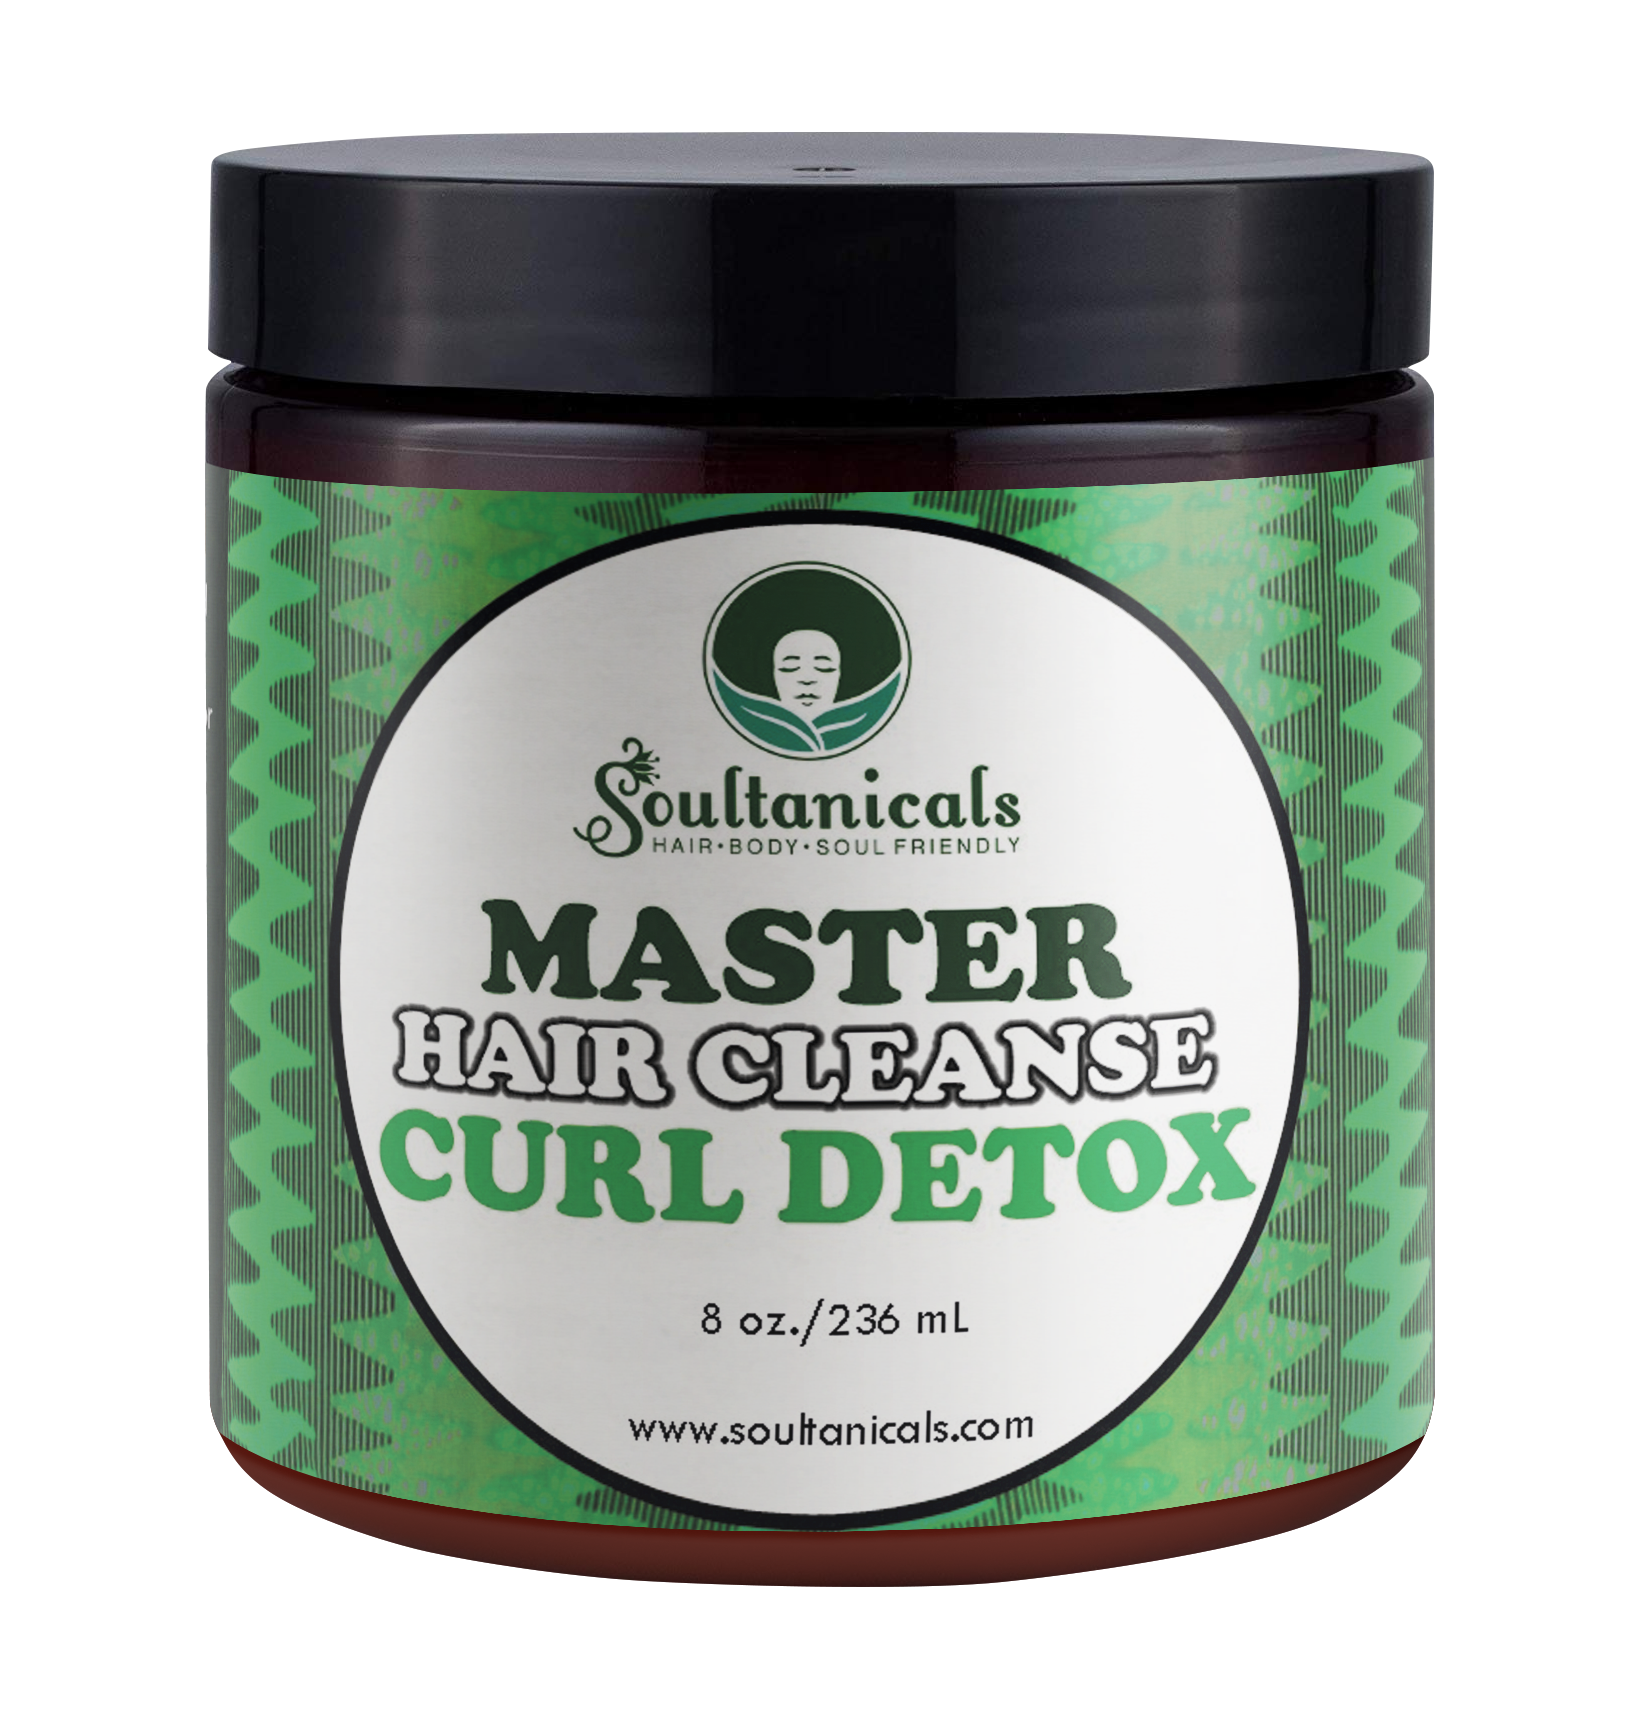 Master Hair Cleanse- Curl Detox